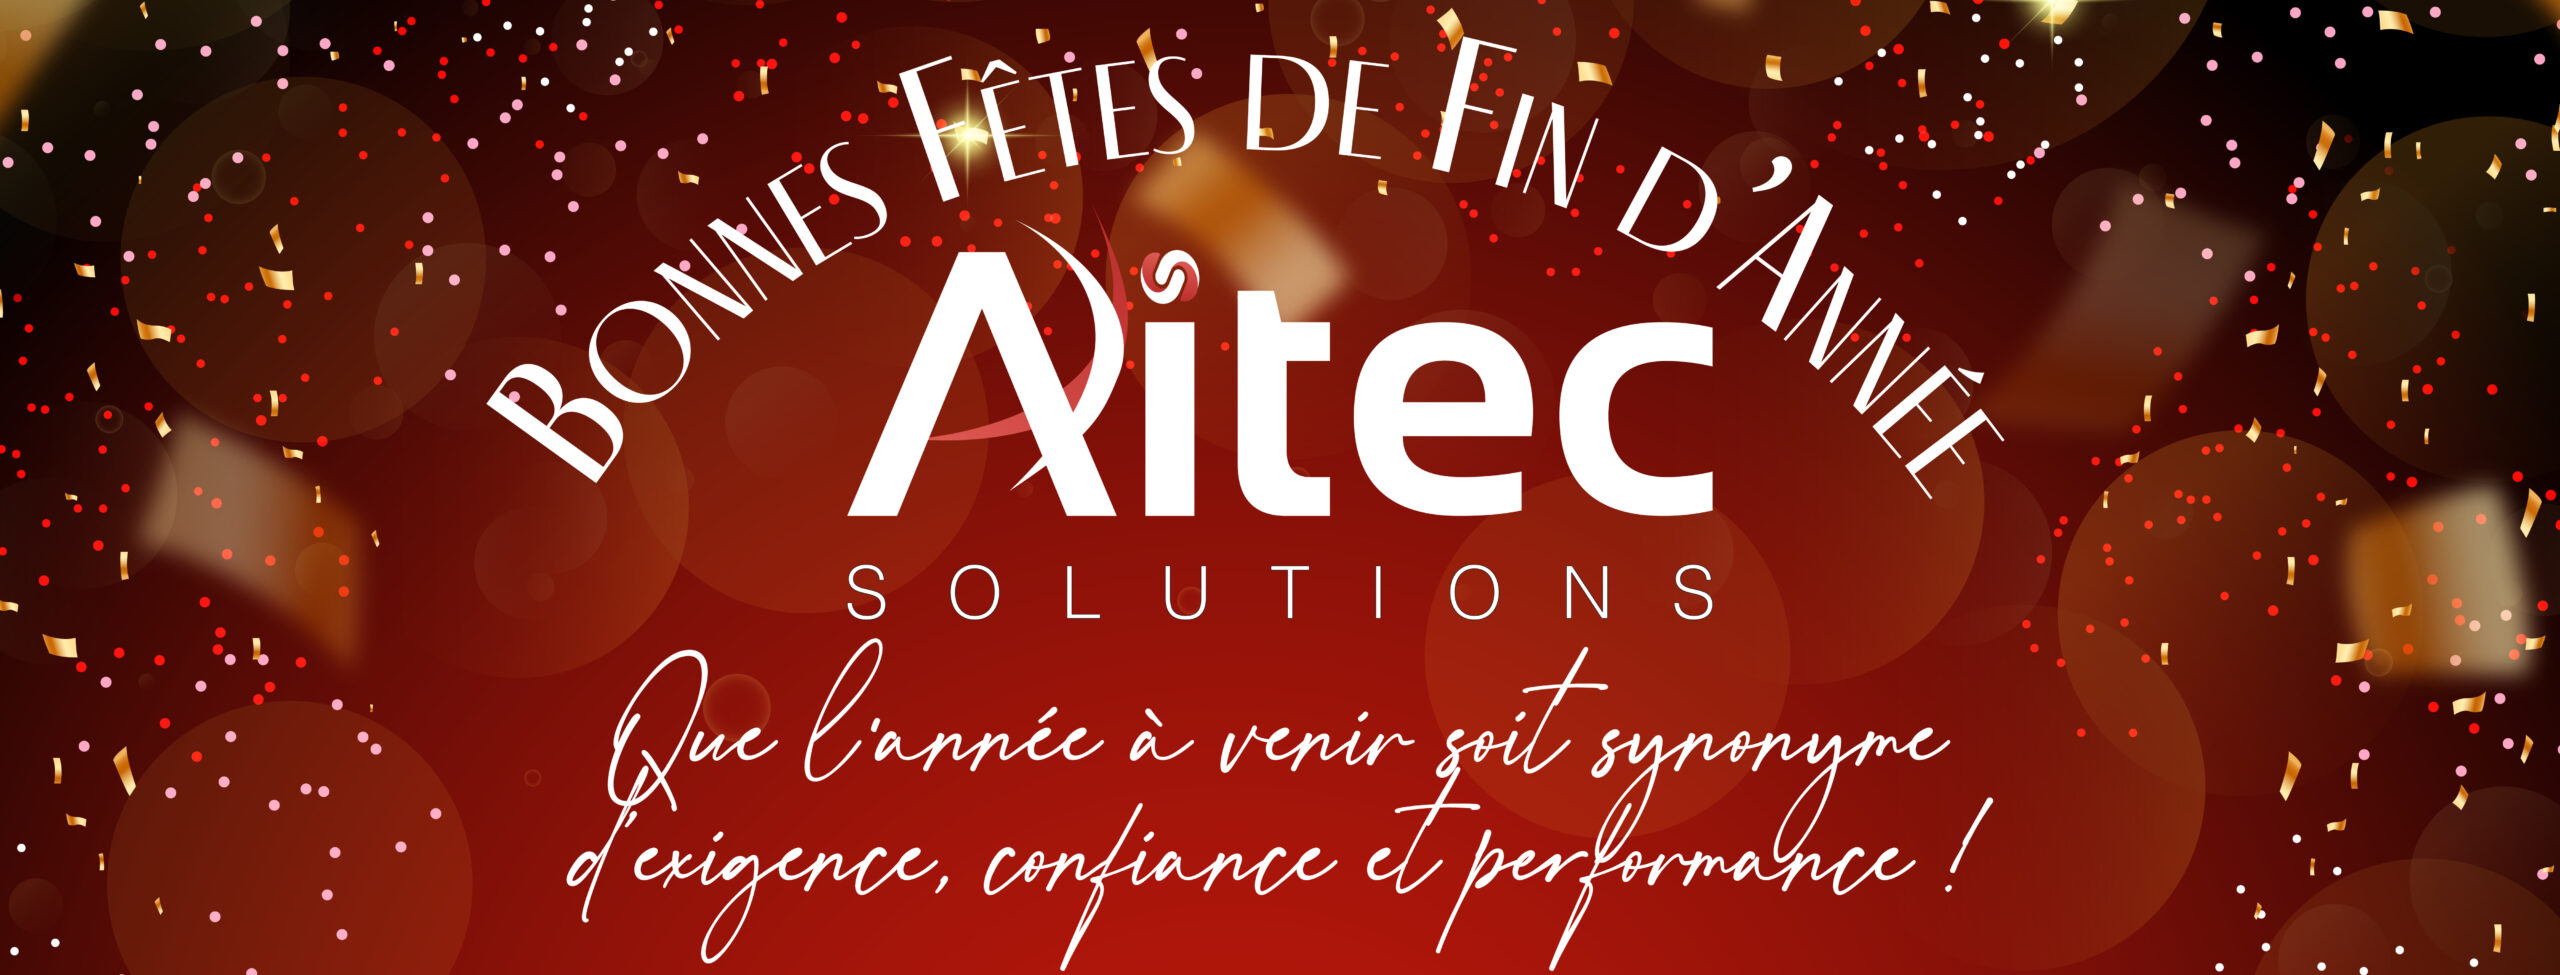 Bonne fêtes de fin d'année avec Aitec Solutions